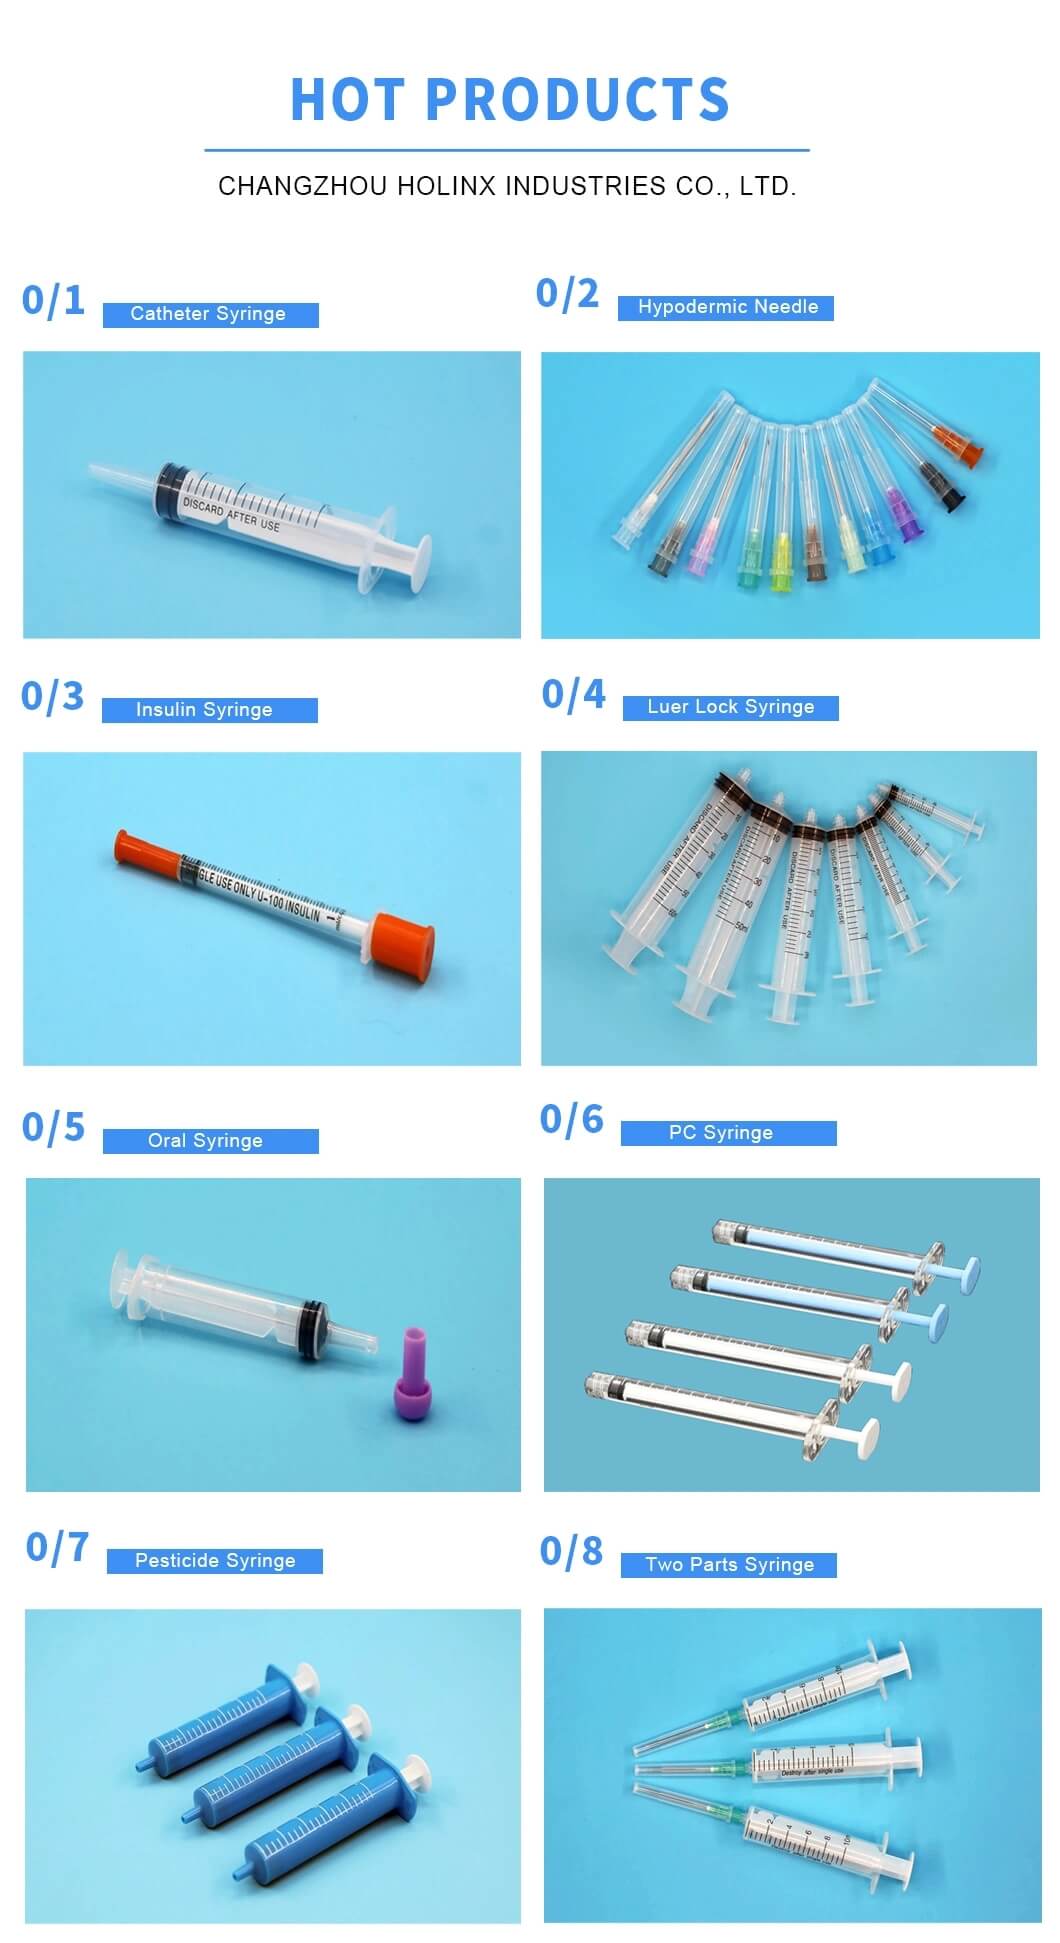 Disposable Luer Slip Syringe